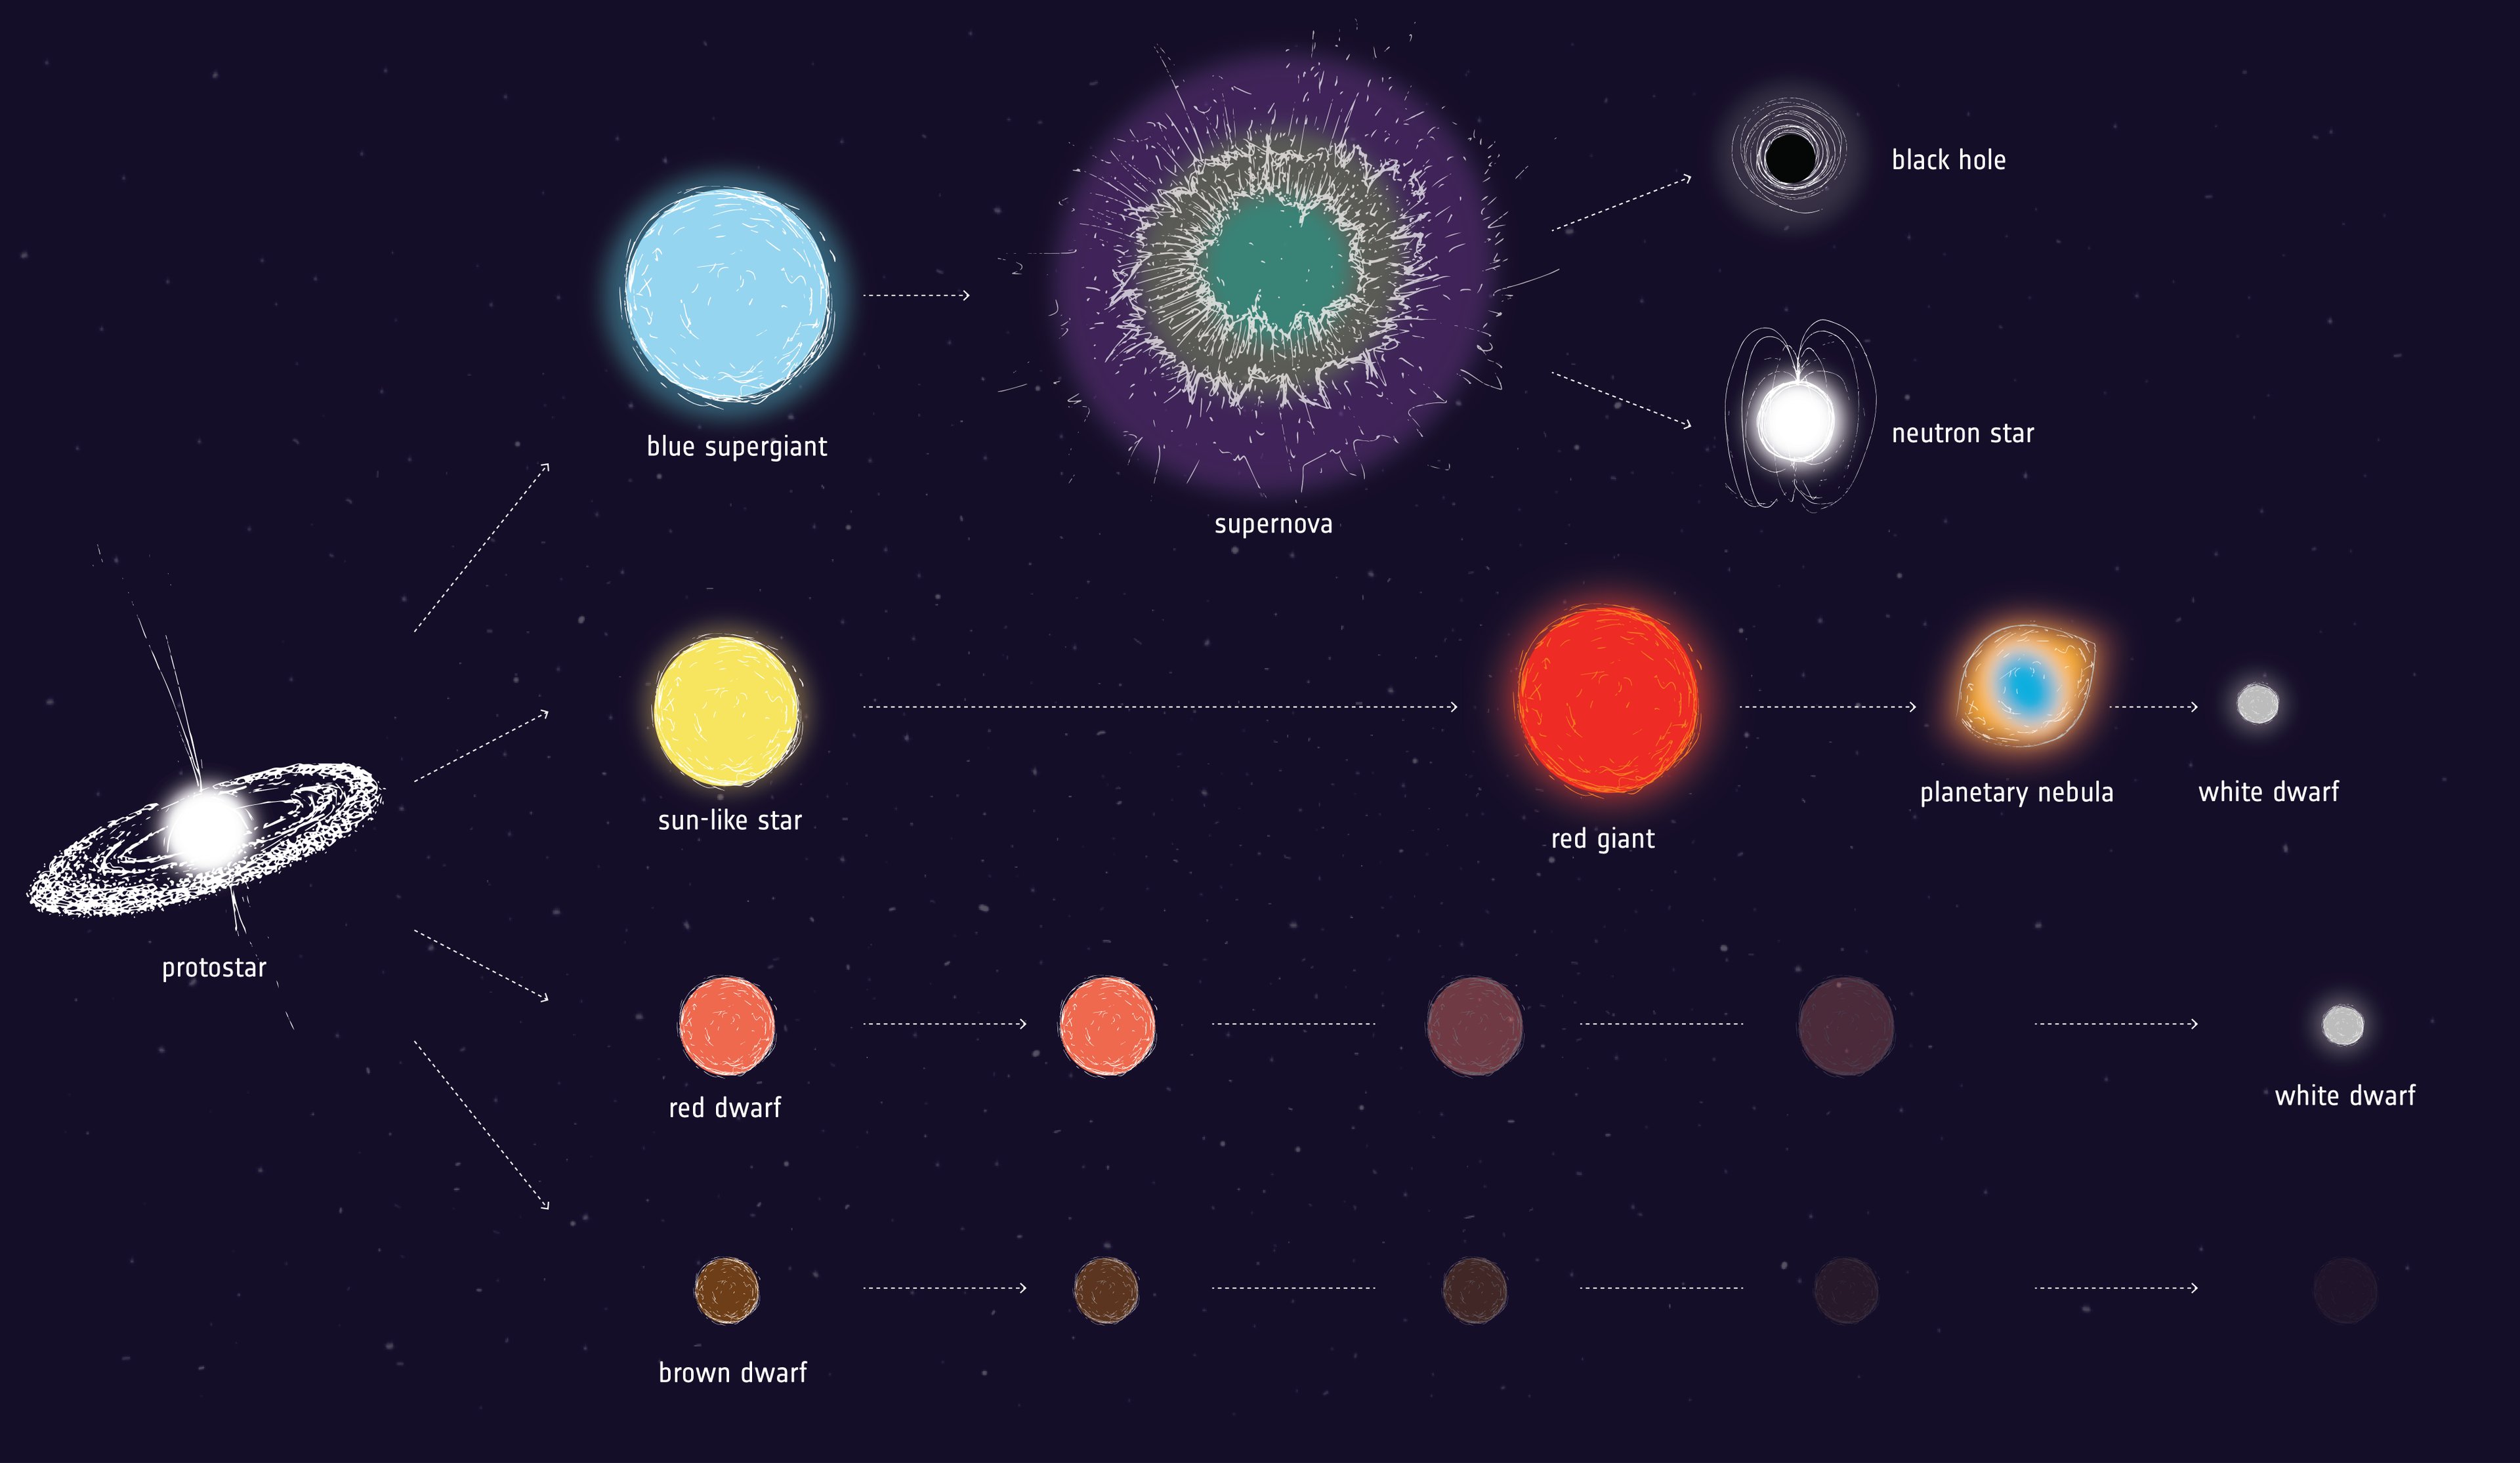 Esquema de evolução estelar para estrelas de diferentes massas. Primeira linha representa evolução de estrelas de alta massa, passando pela explosão da supernova e finalizando como um buraco negro ou uma estrela de nêutrons